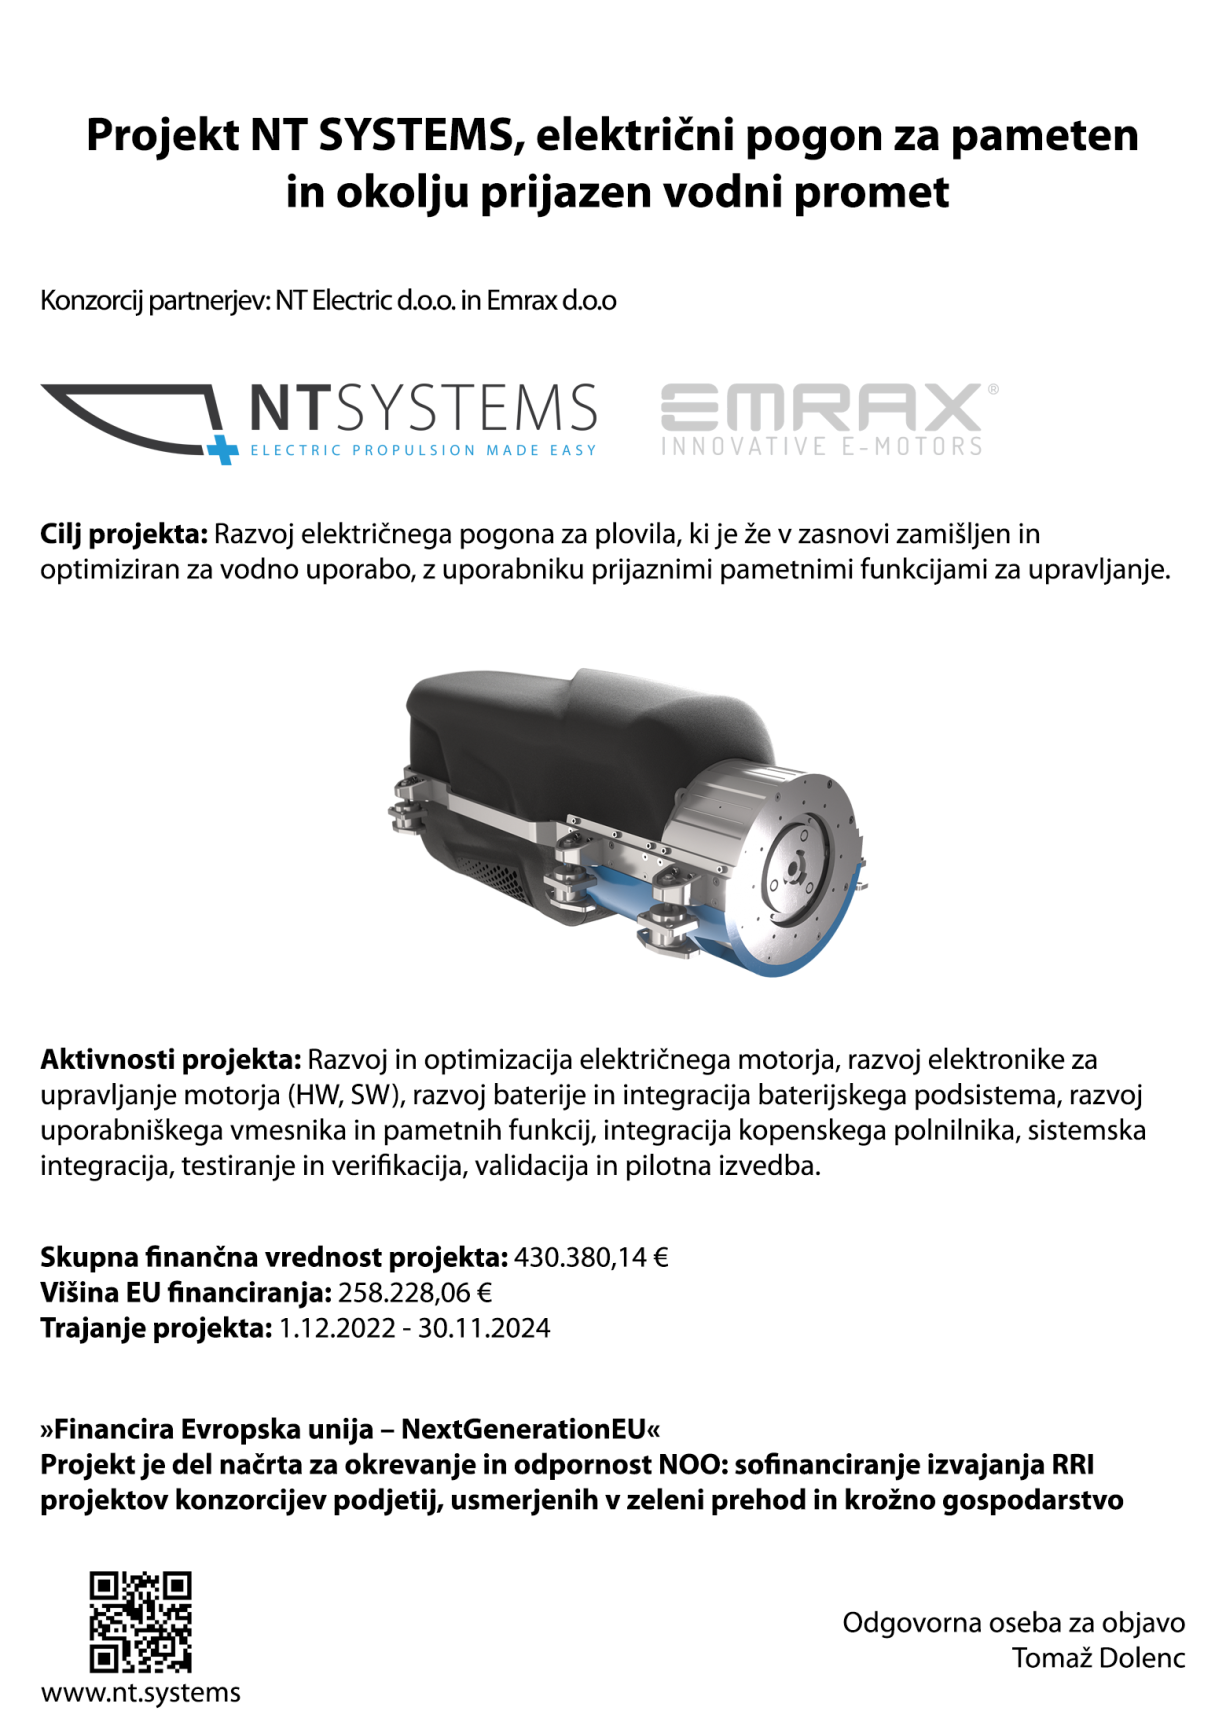 NTSystems_NextGenEU_sredstva_Plakat_A3_V2